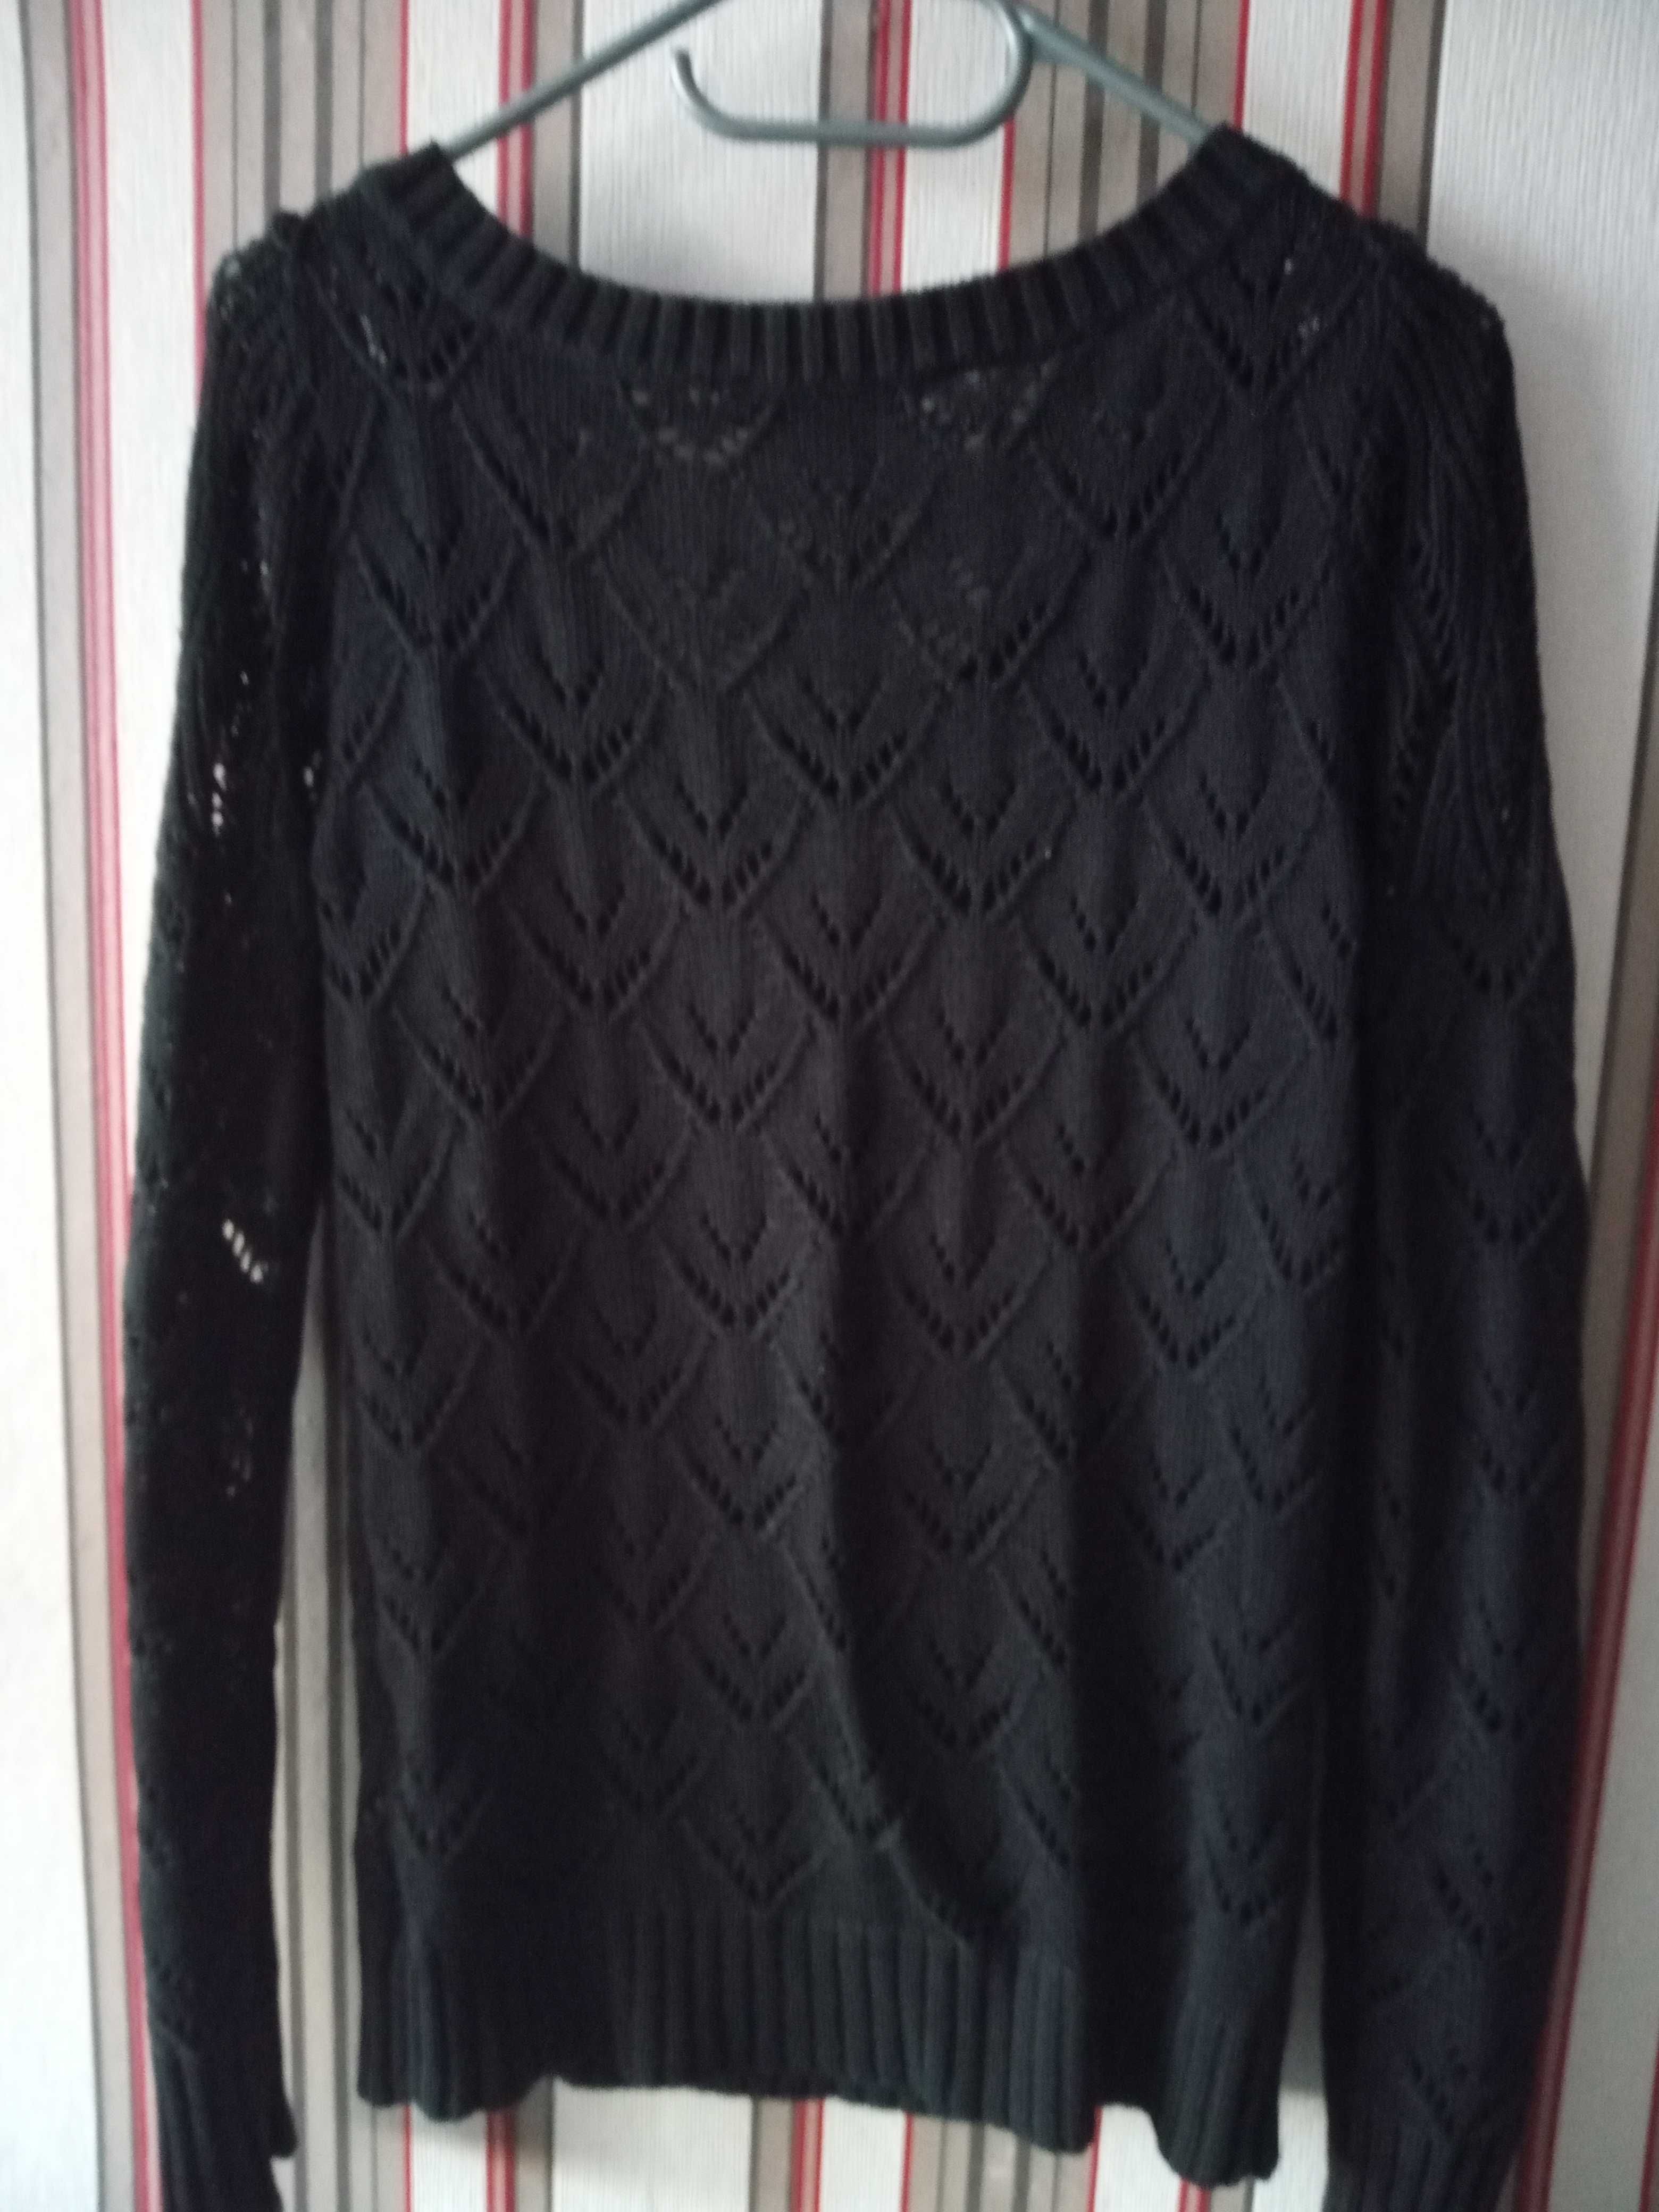 Sweterek damski czarny rozmiar S-M